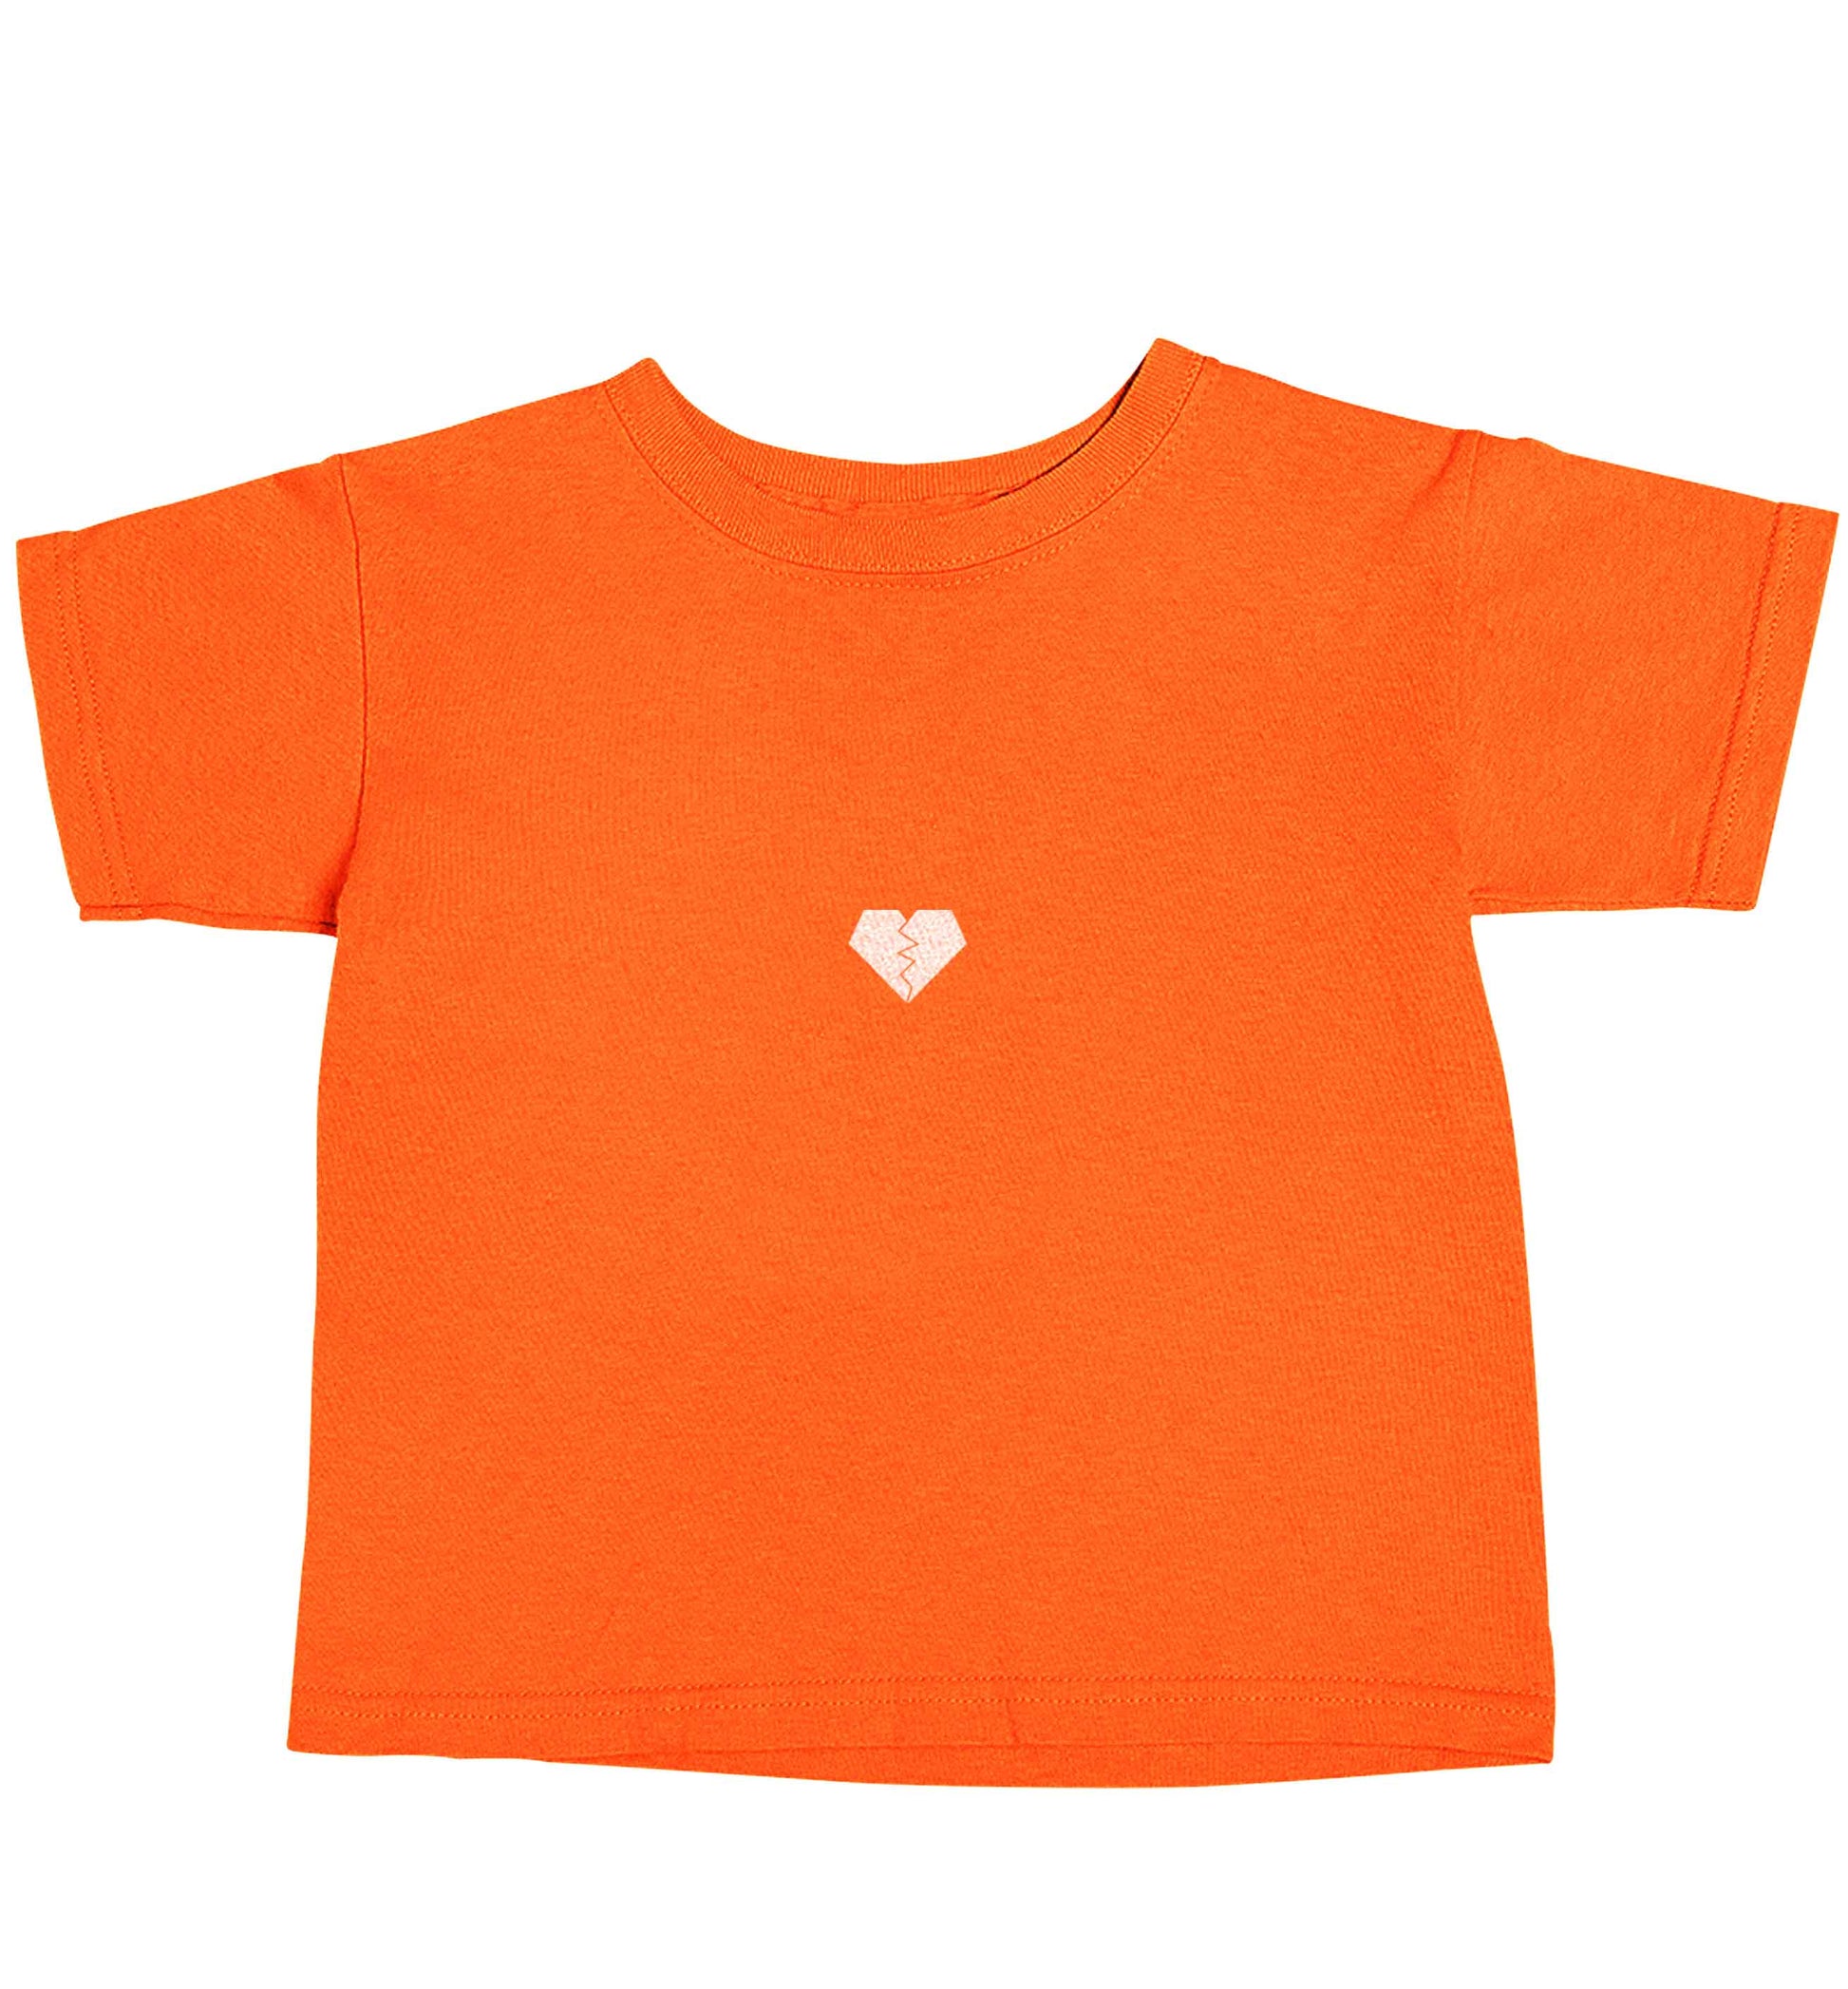 Tiny broken heart orange baby toddler Tshirt 2 Years